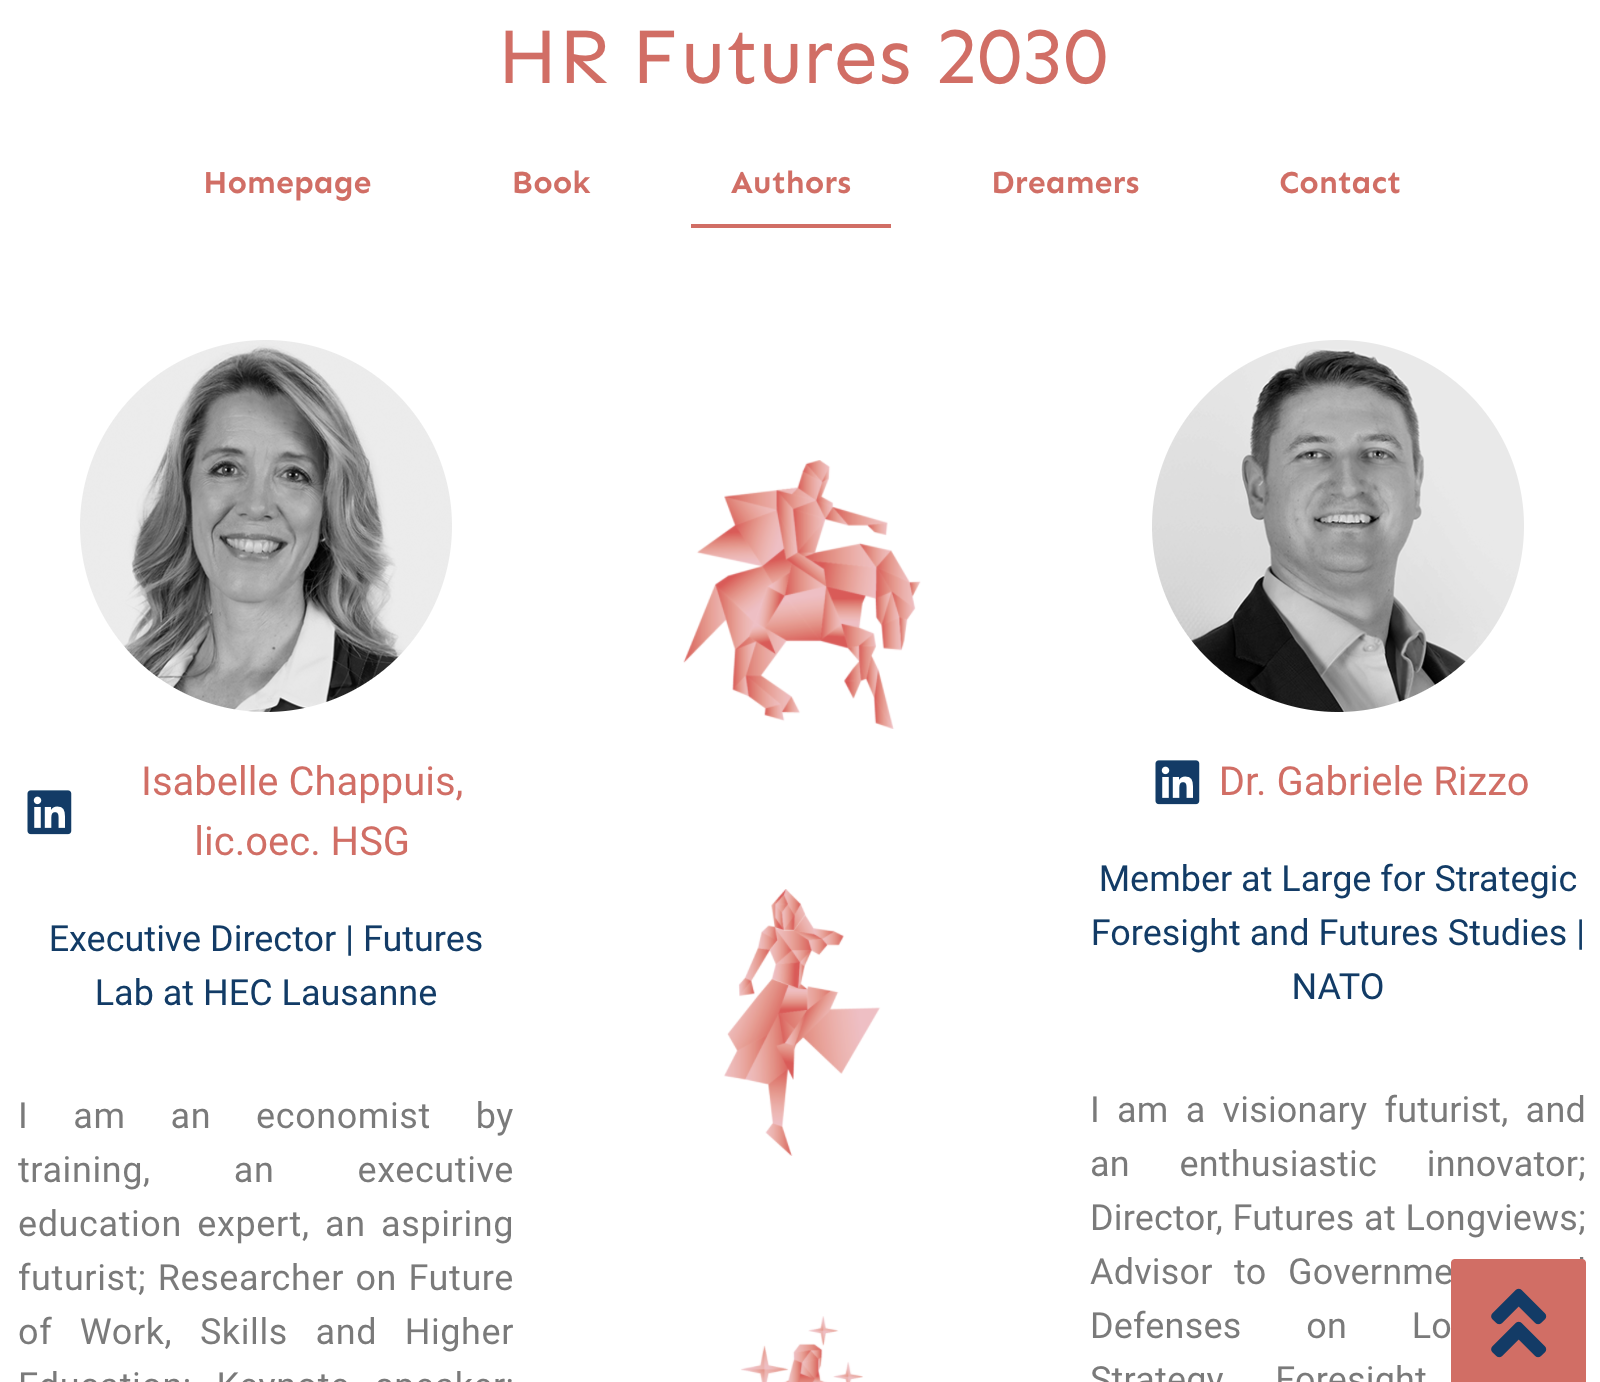 HR Futures 2030 site